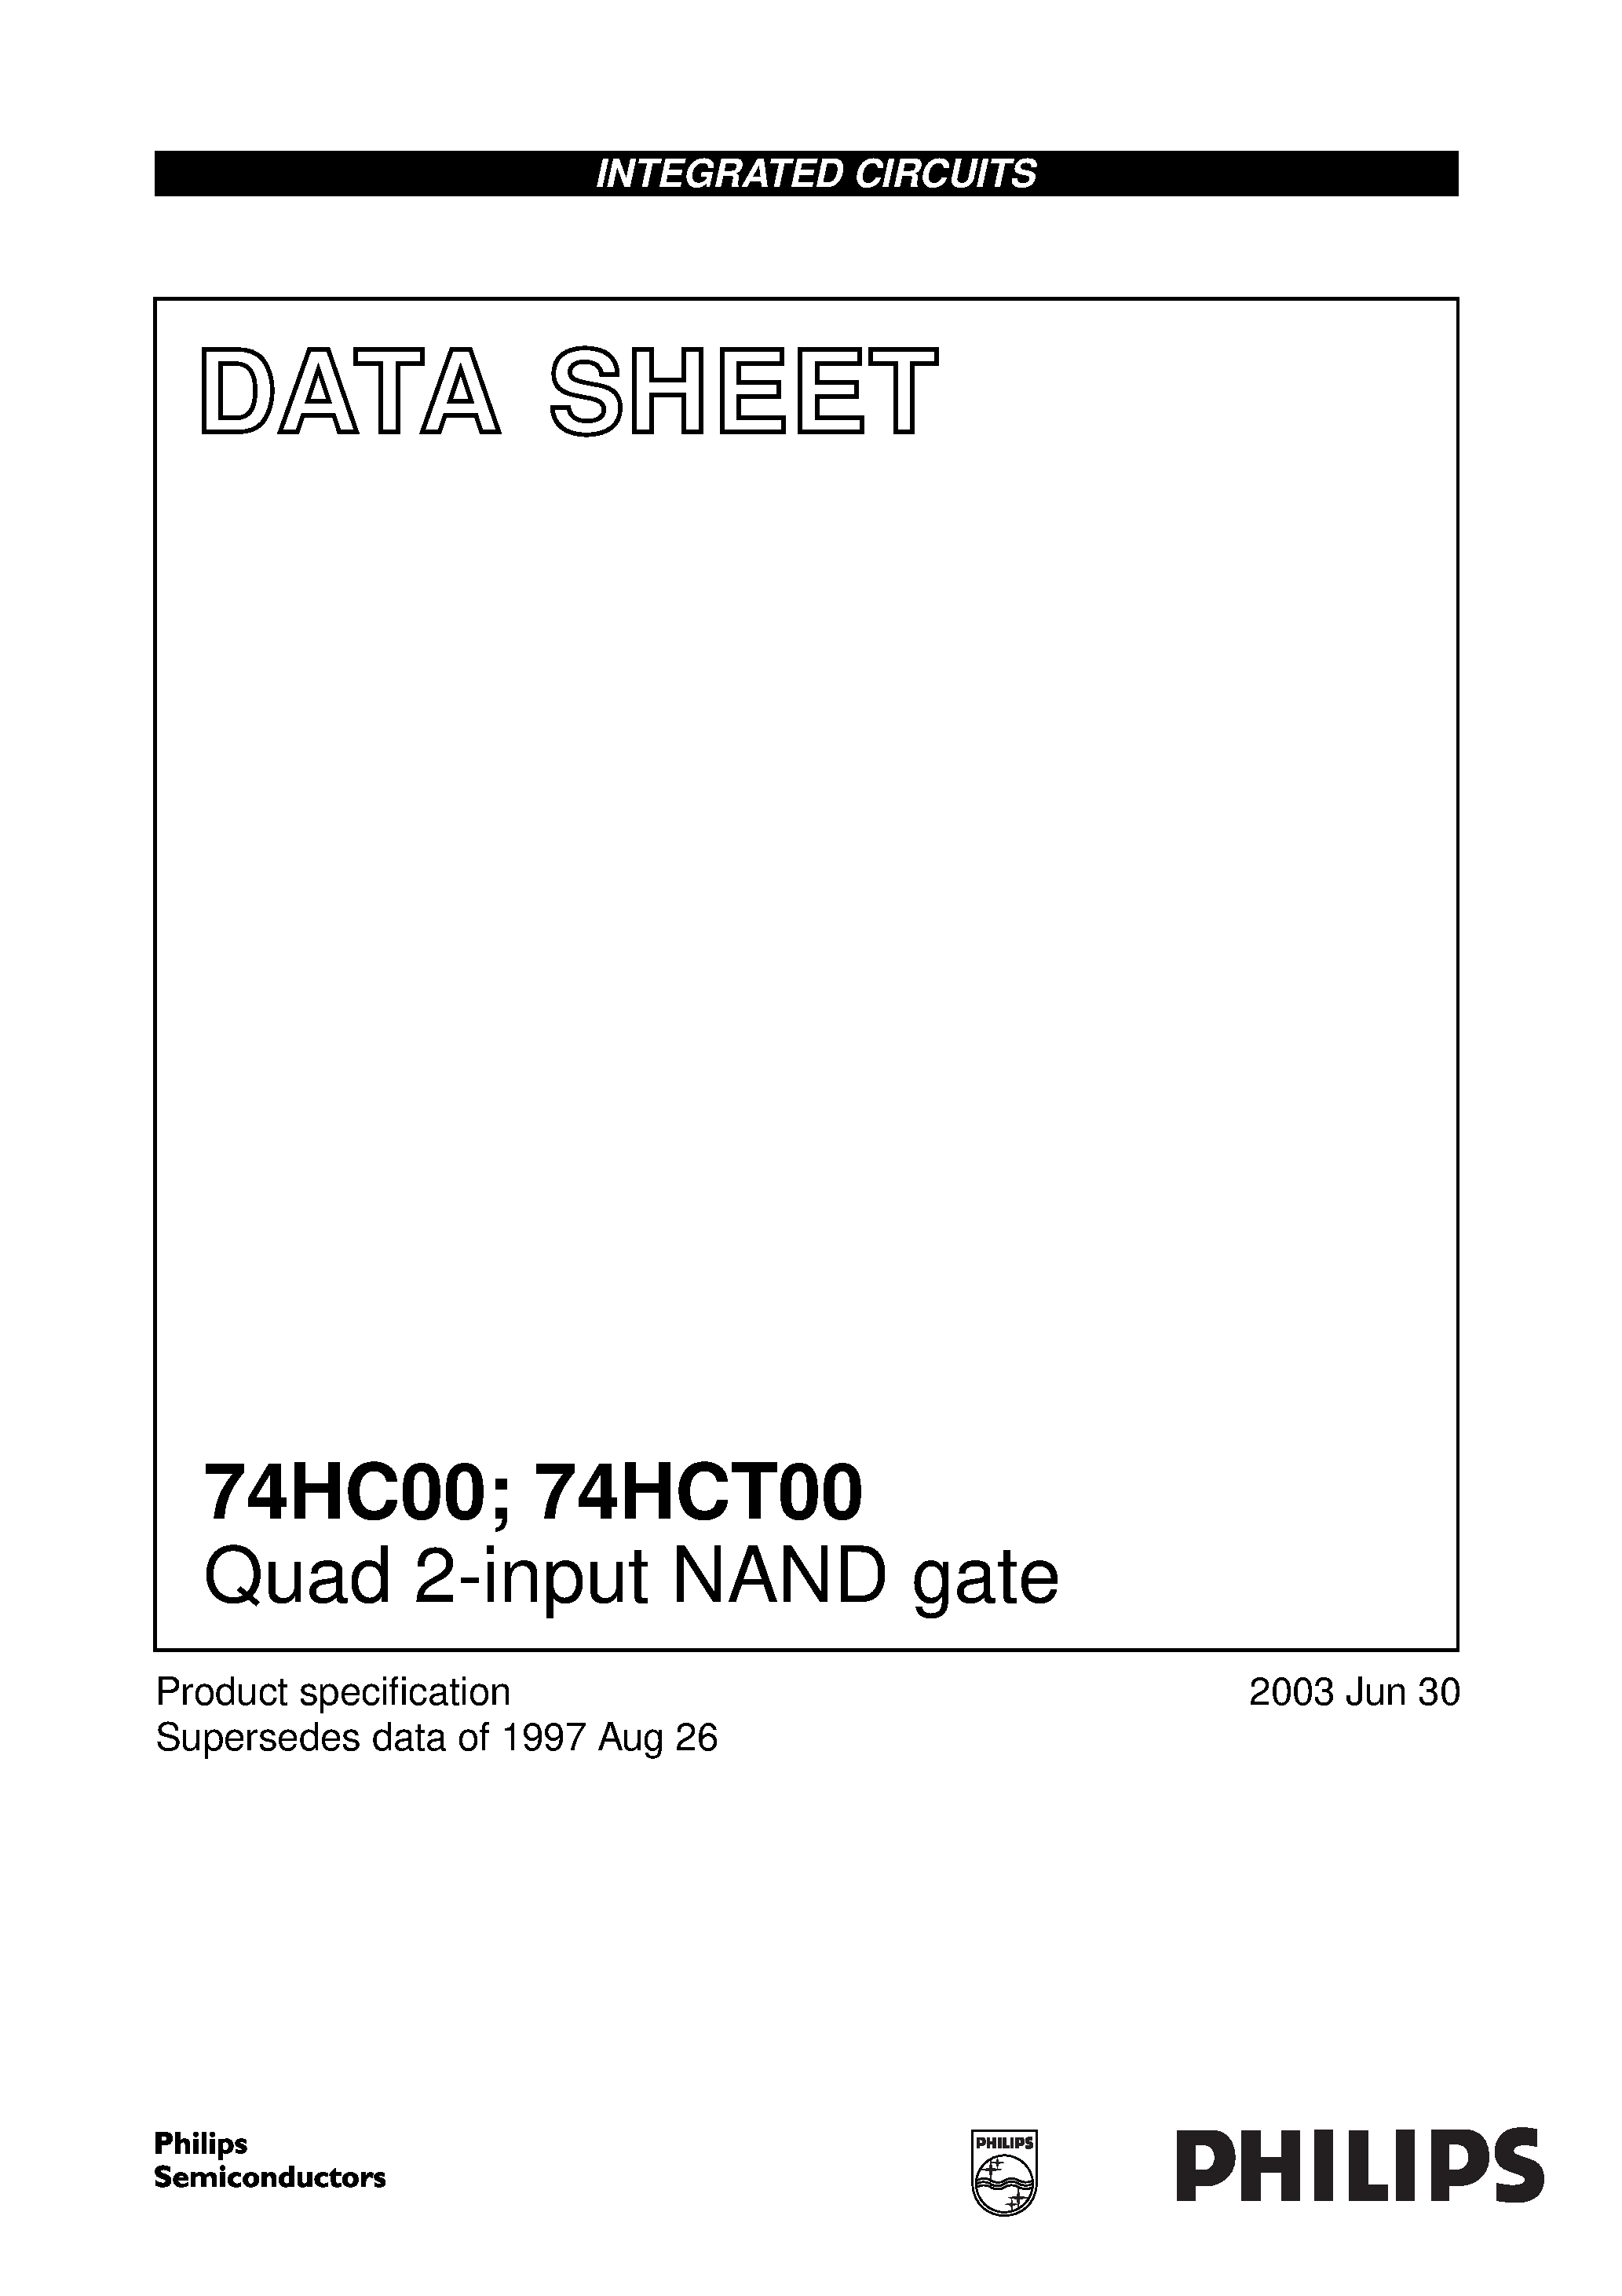 Даташит 74HC00D - Quad 2-input NAND gate страница 1